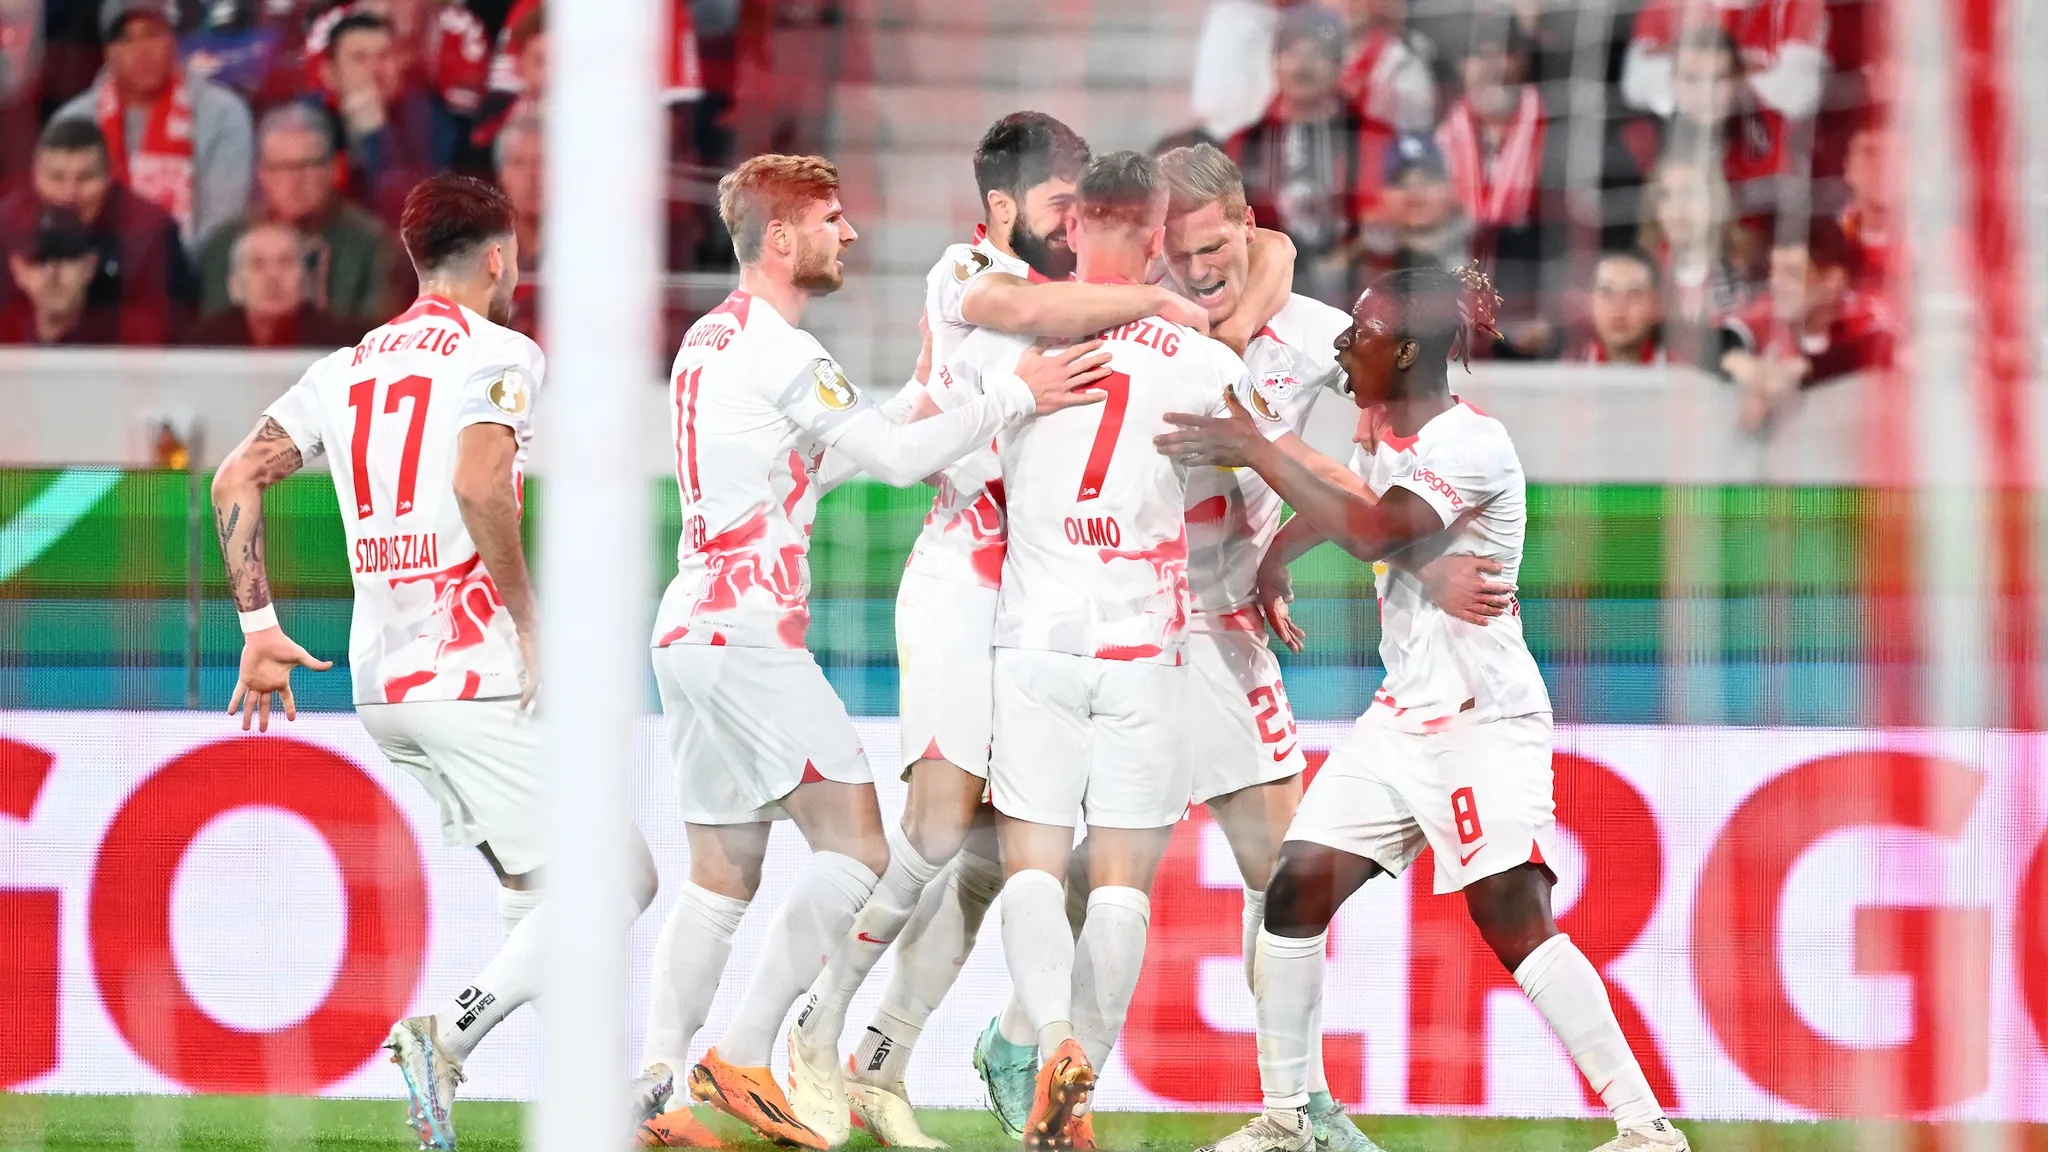 RB Leipzig celebrate a goal vs SC Freiburg.